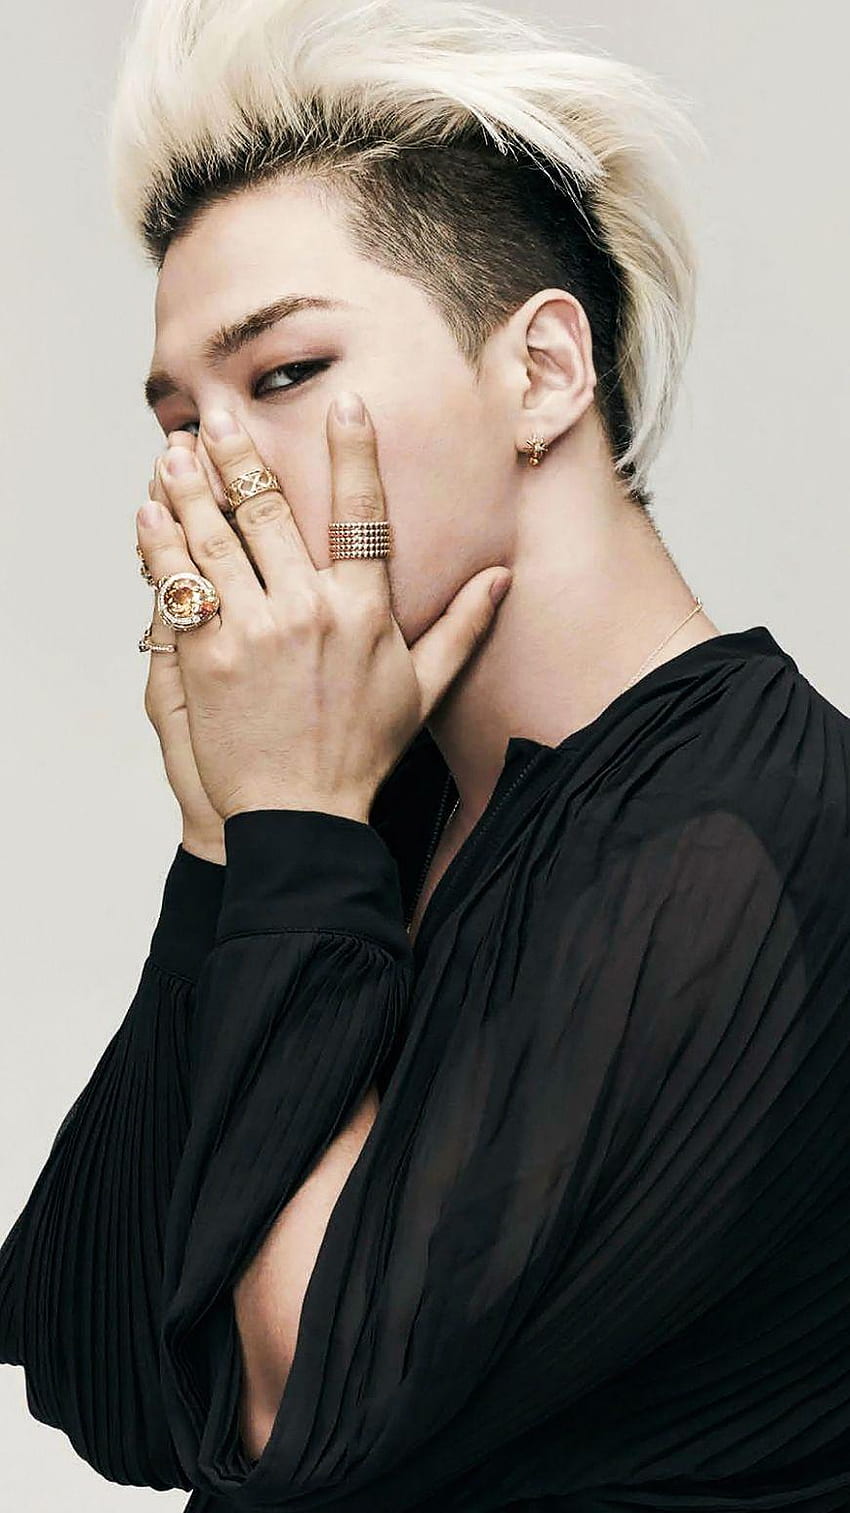 Taeyang Lockscreen  BIGBANG  Kpop Wallpaper  Taeyang Bigbang Big bang  kpop